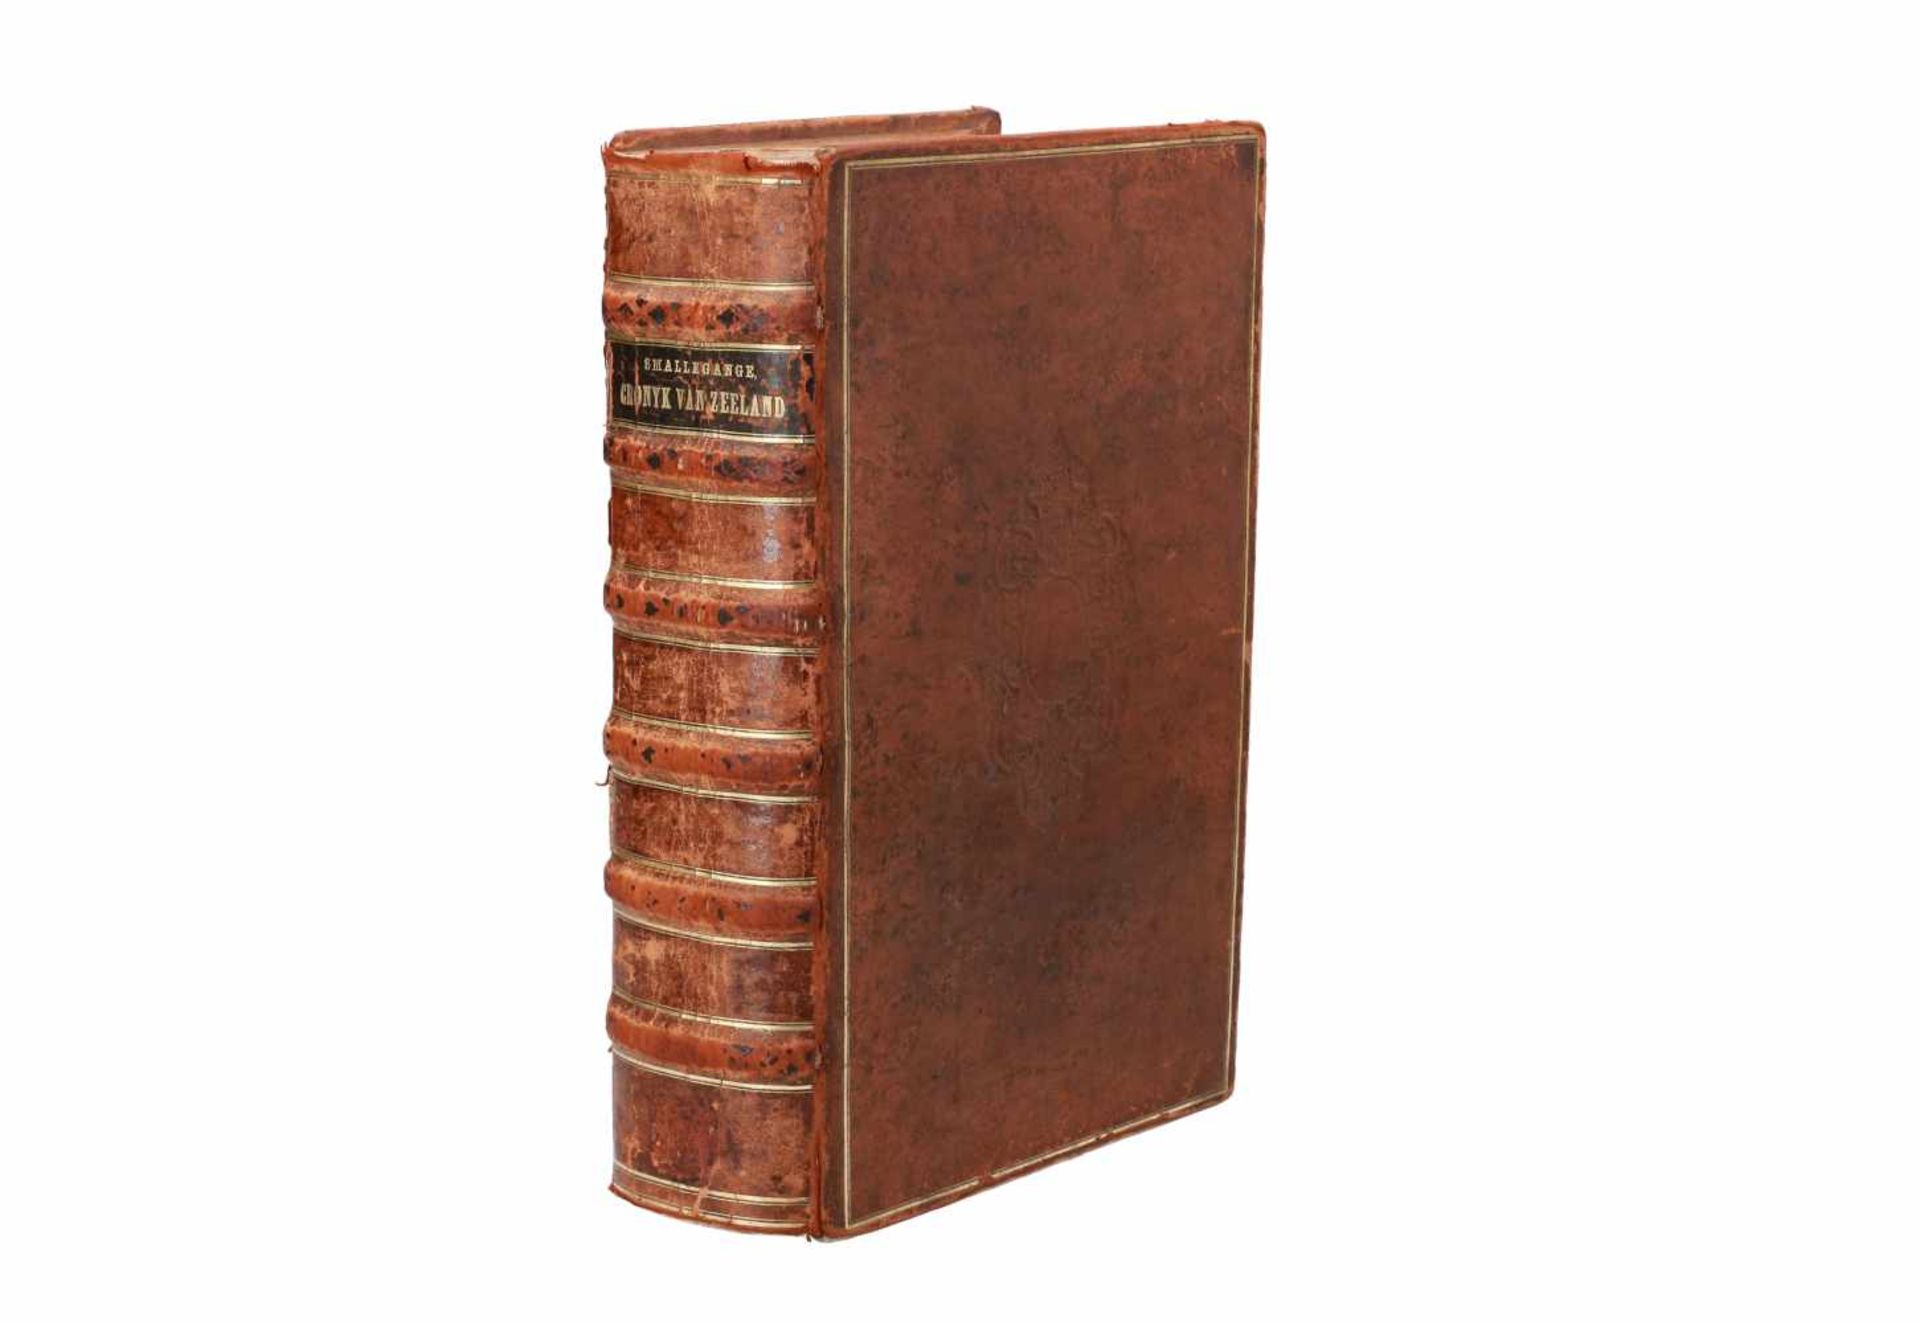 Boek: 'Nieuwe Cronyk van Zeeland', door M. Smallegange, 1696. In 19-eeuwse lederen band.